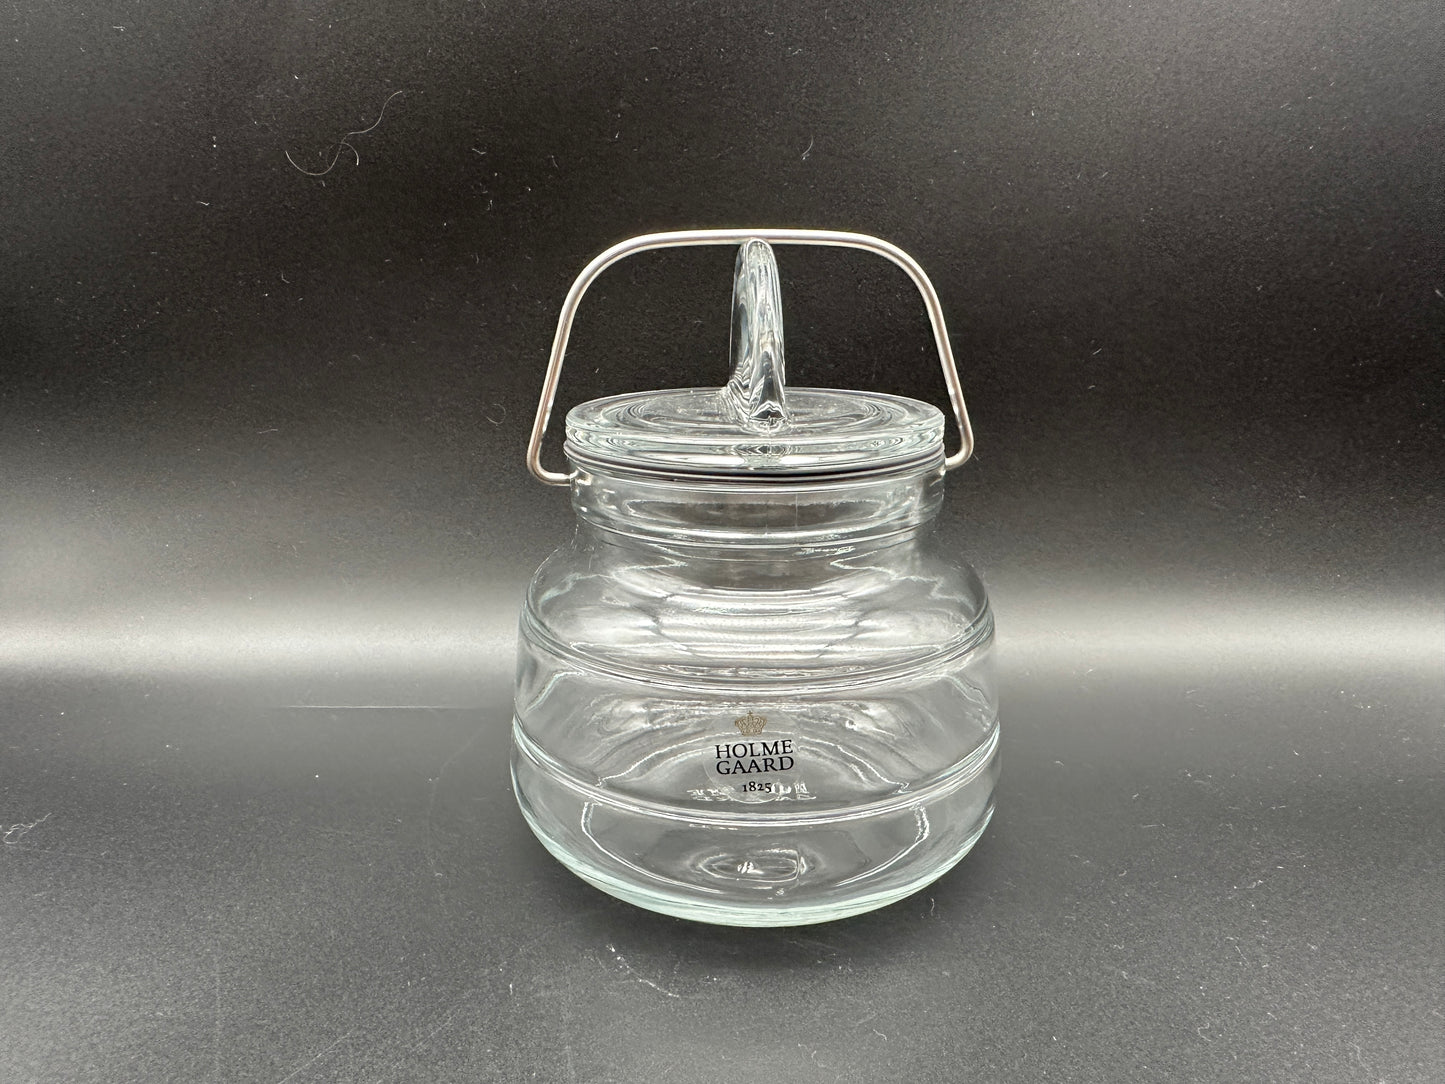 Holmegaard - Preservative Jar with lid. Scandinapan